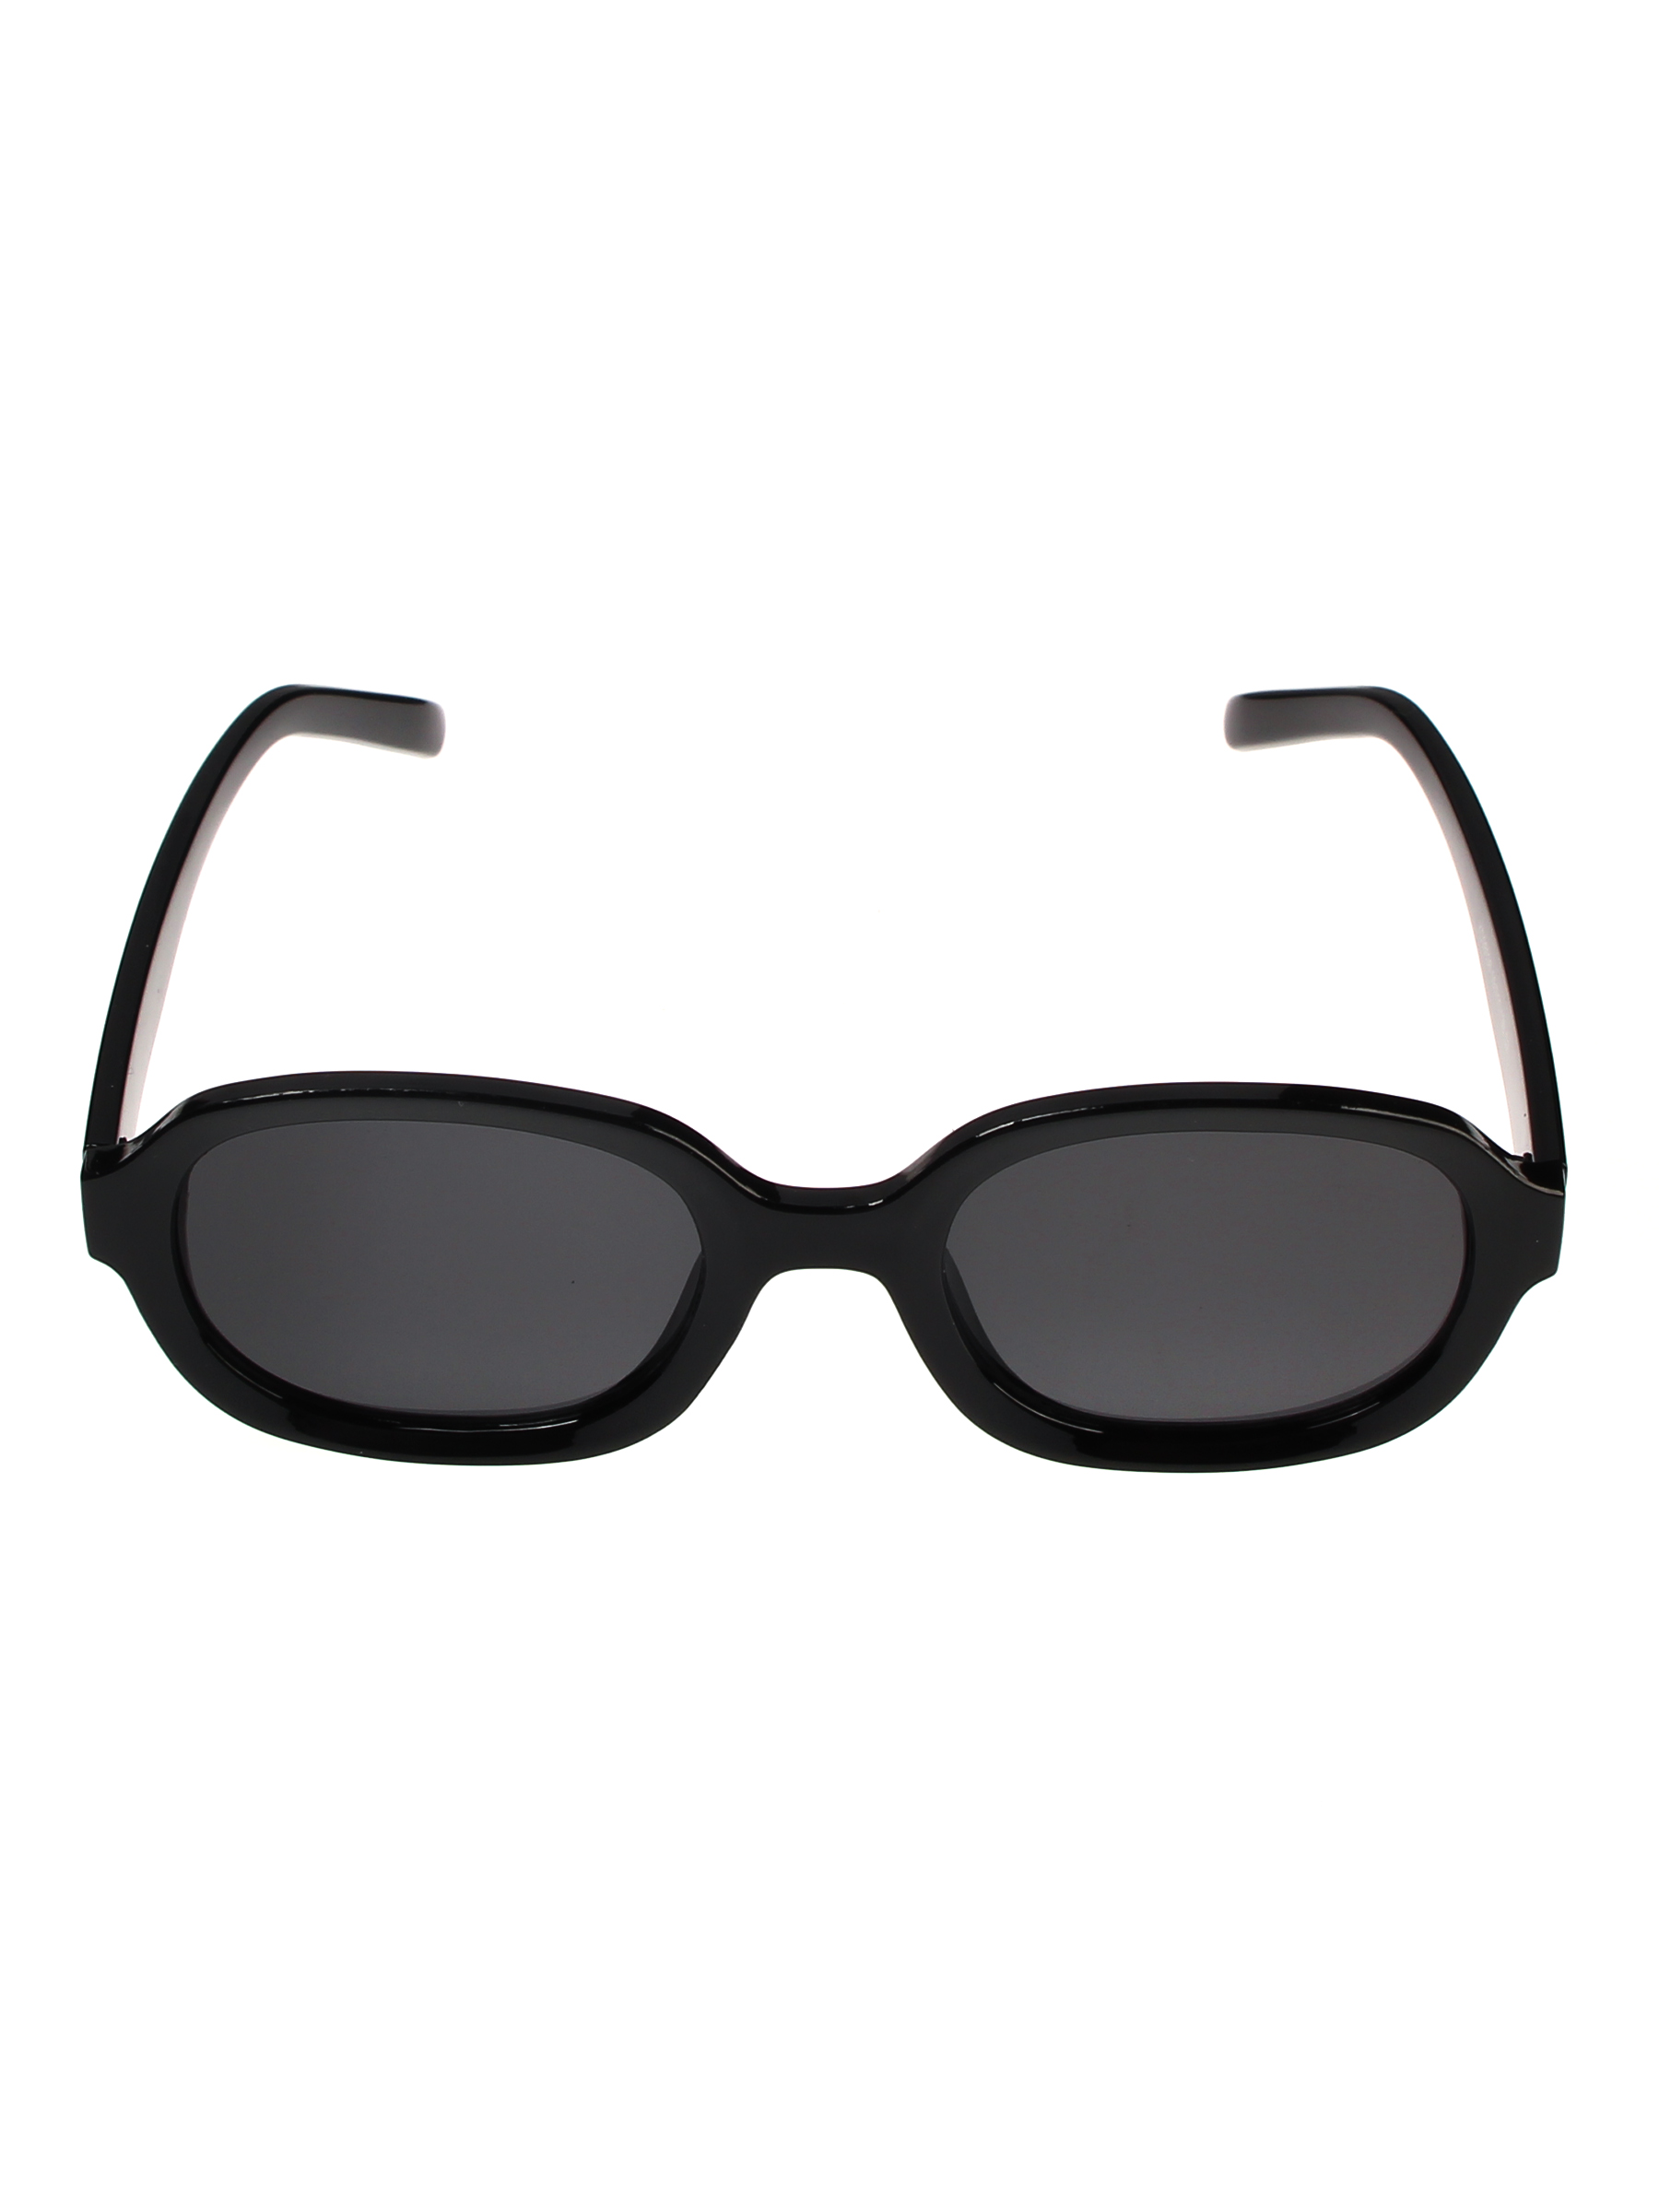 фото Солнцезащитные очки женские pretty mania mdp003 черный глянцевый